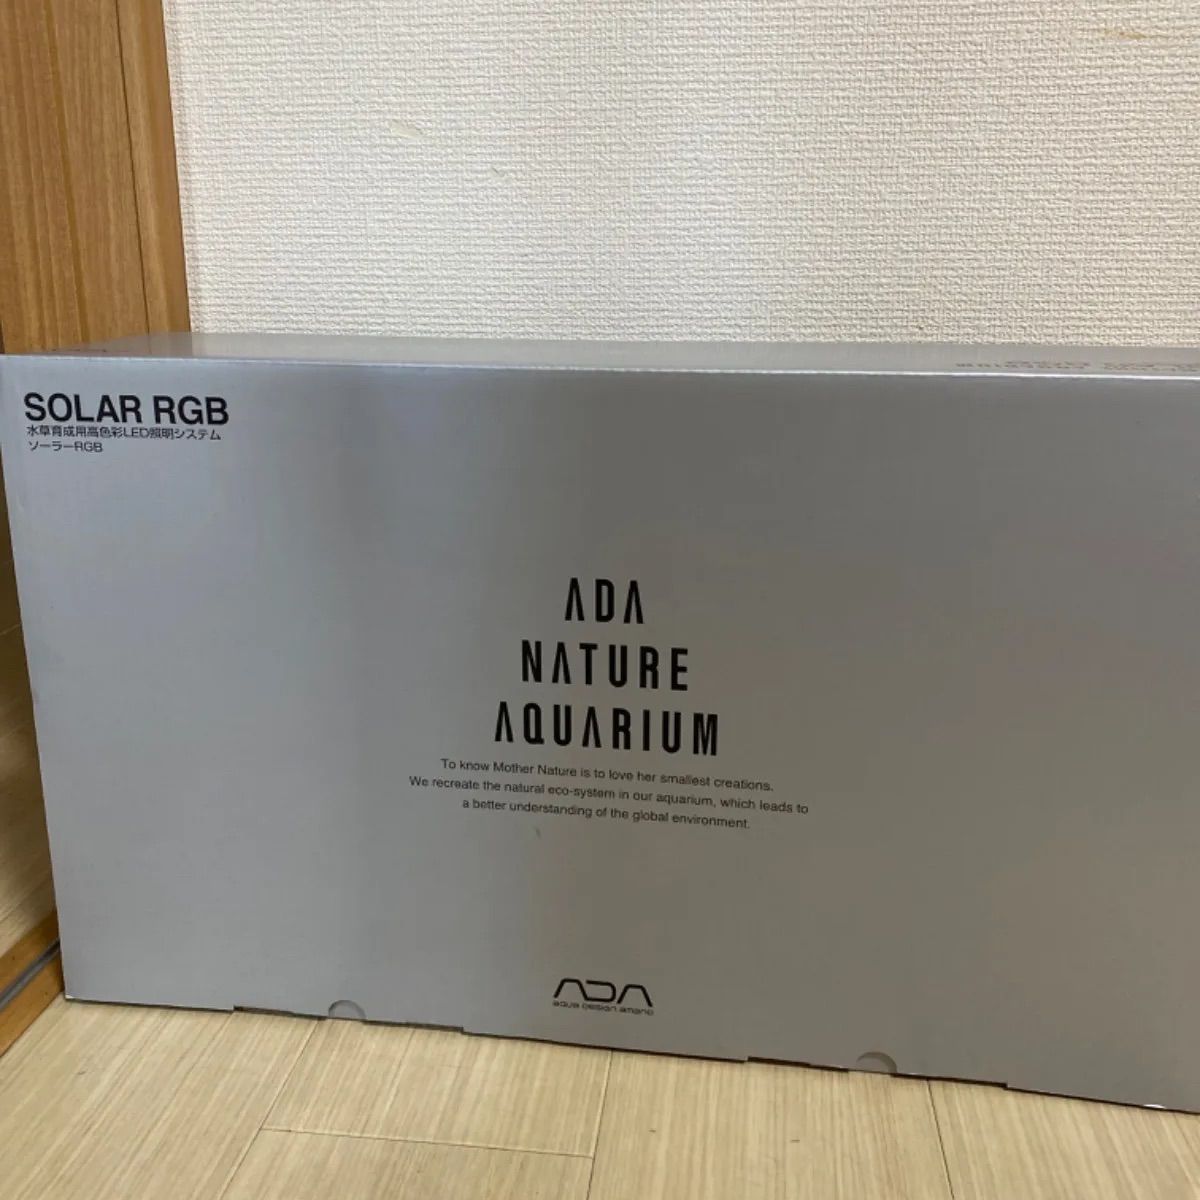 【美品】ADA SOLAR ソーラーRGB 照明システム 専用シェード付コメント失礼します